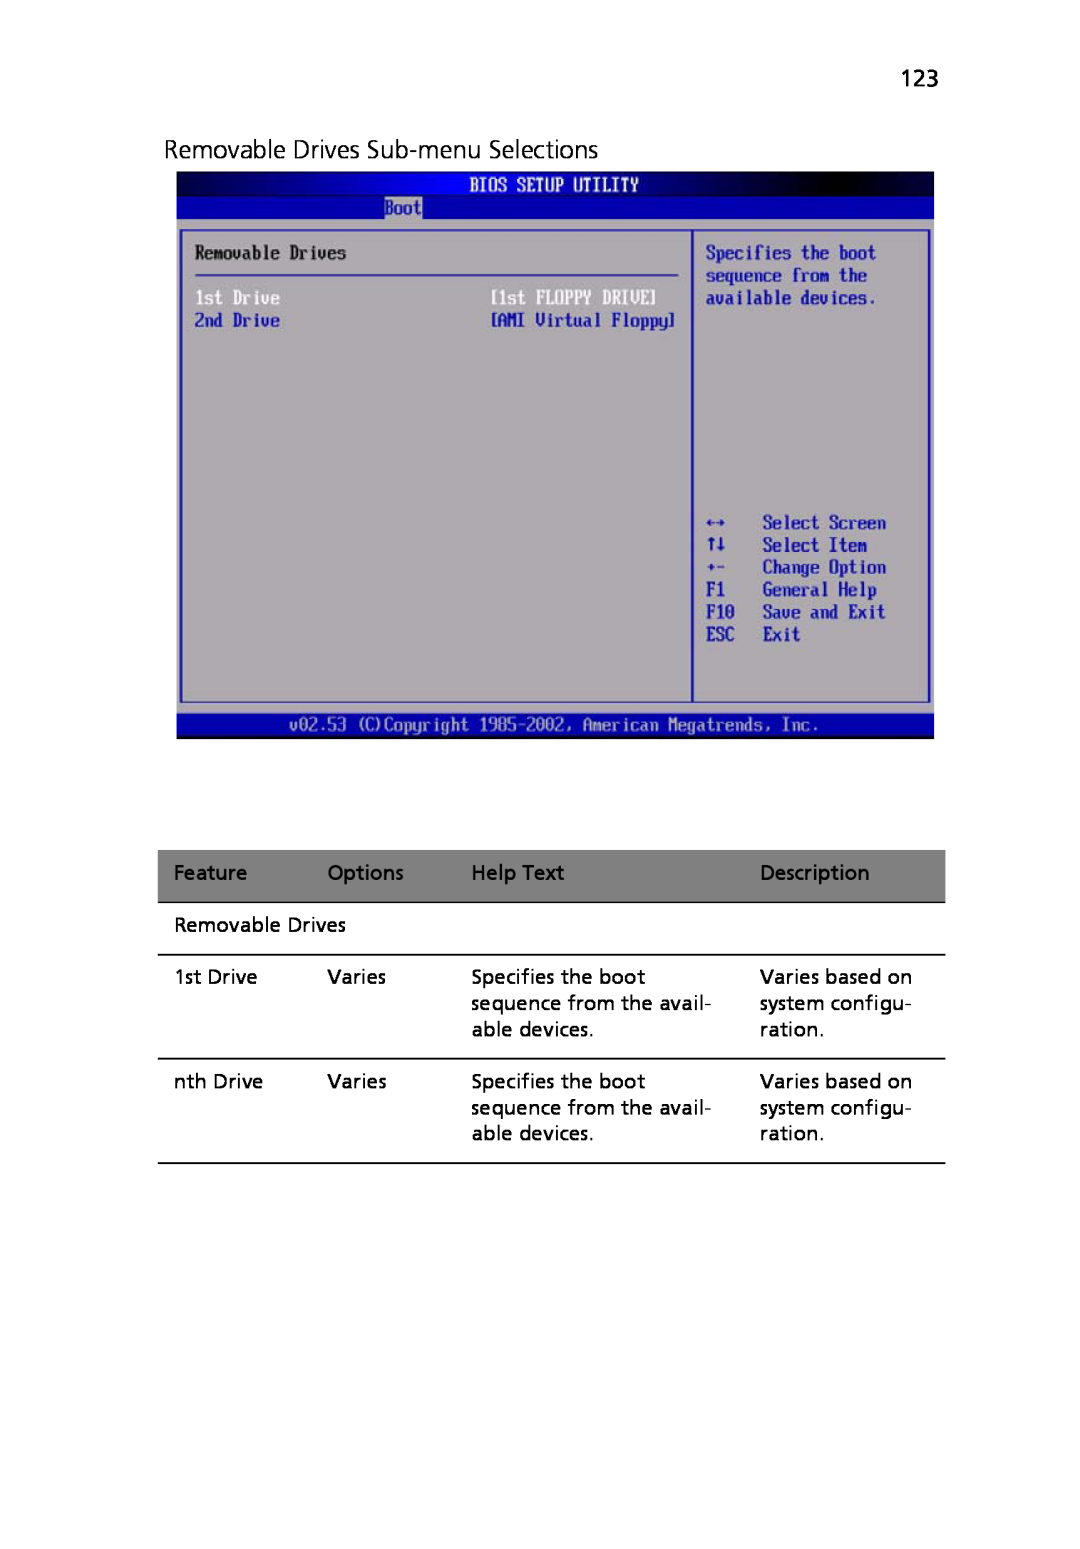 Acer Altos R710 manual Removable Drives Sub-menu Selections, Feature, Options, Help Text, Description 